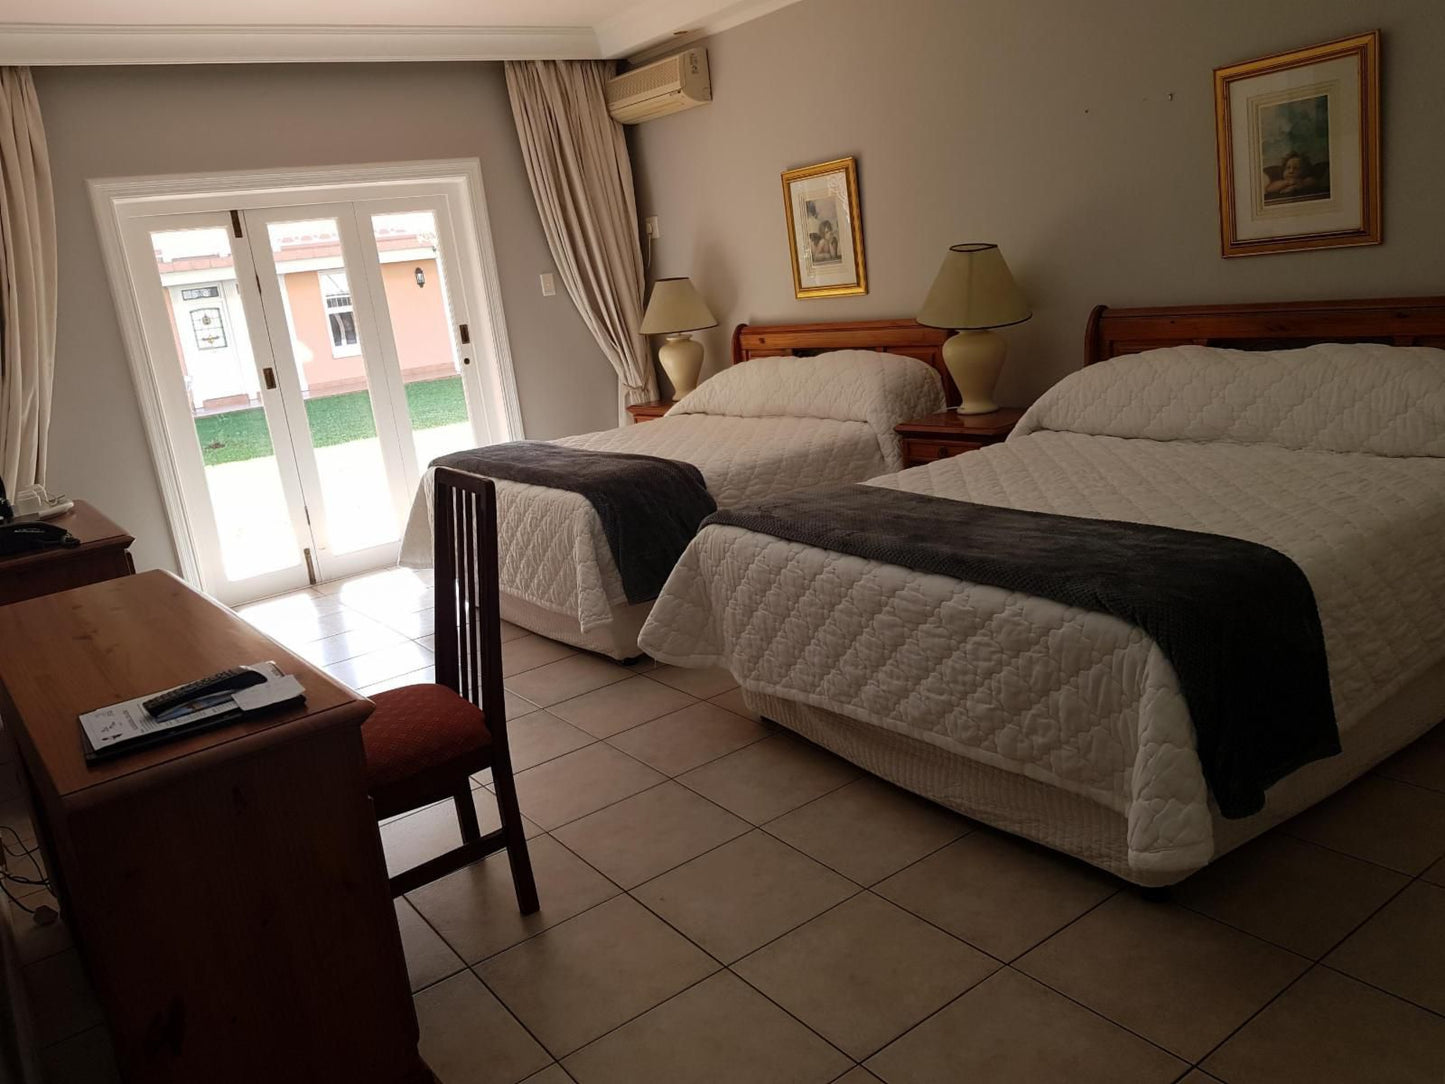 Sica S Guest House Westridge Durban Kwazulu Natal South Africa Bedroom